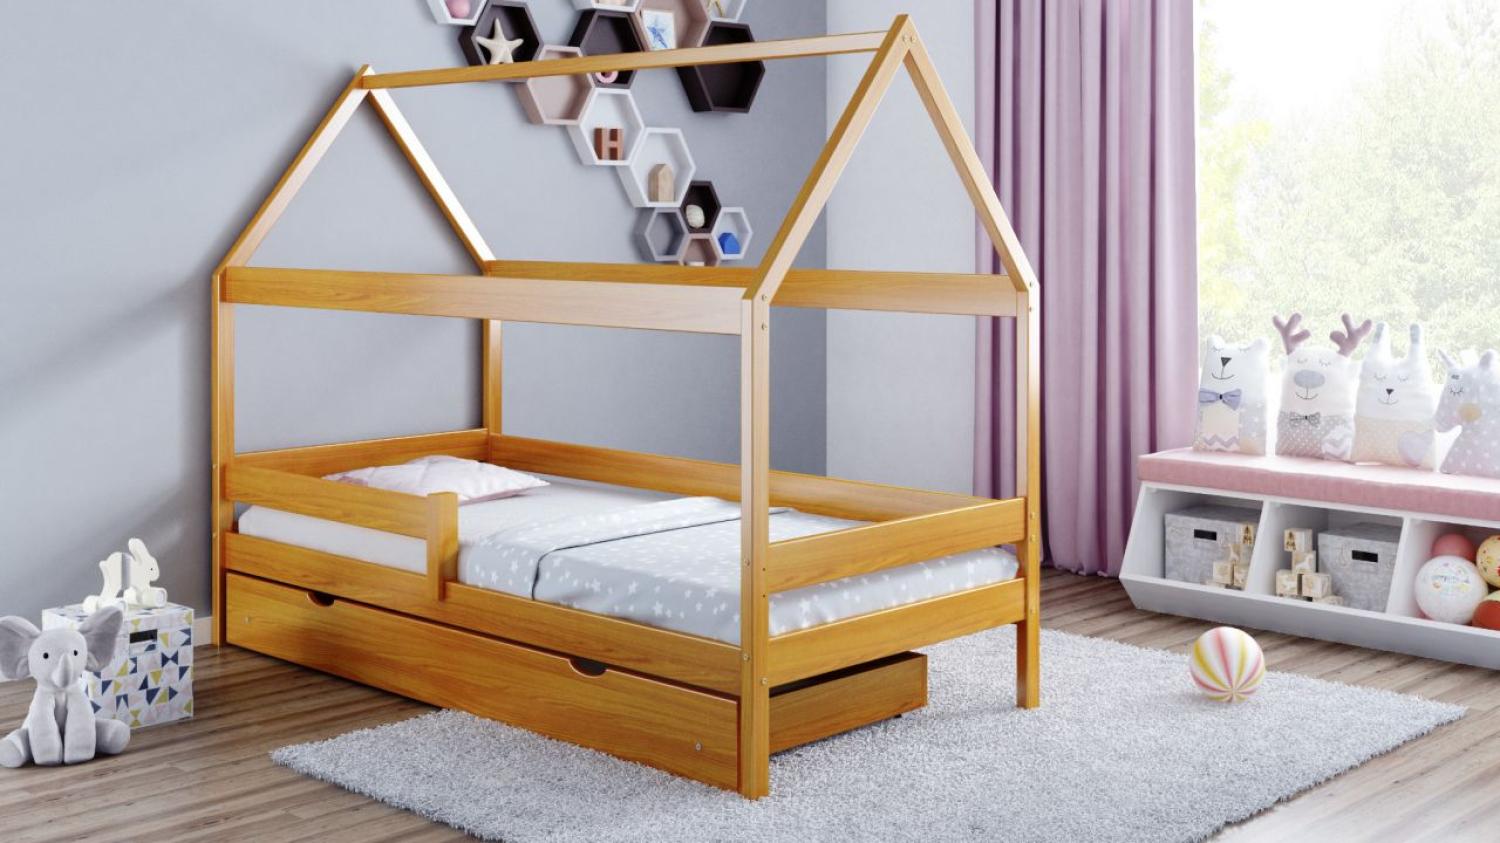 Kinderbettenwelt 'Home Plus' Hausbett 90x200 cm, braun, Kiefer massiv, mit Schublade und Matratze Bild 1